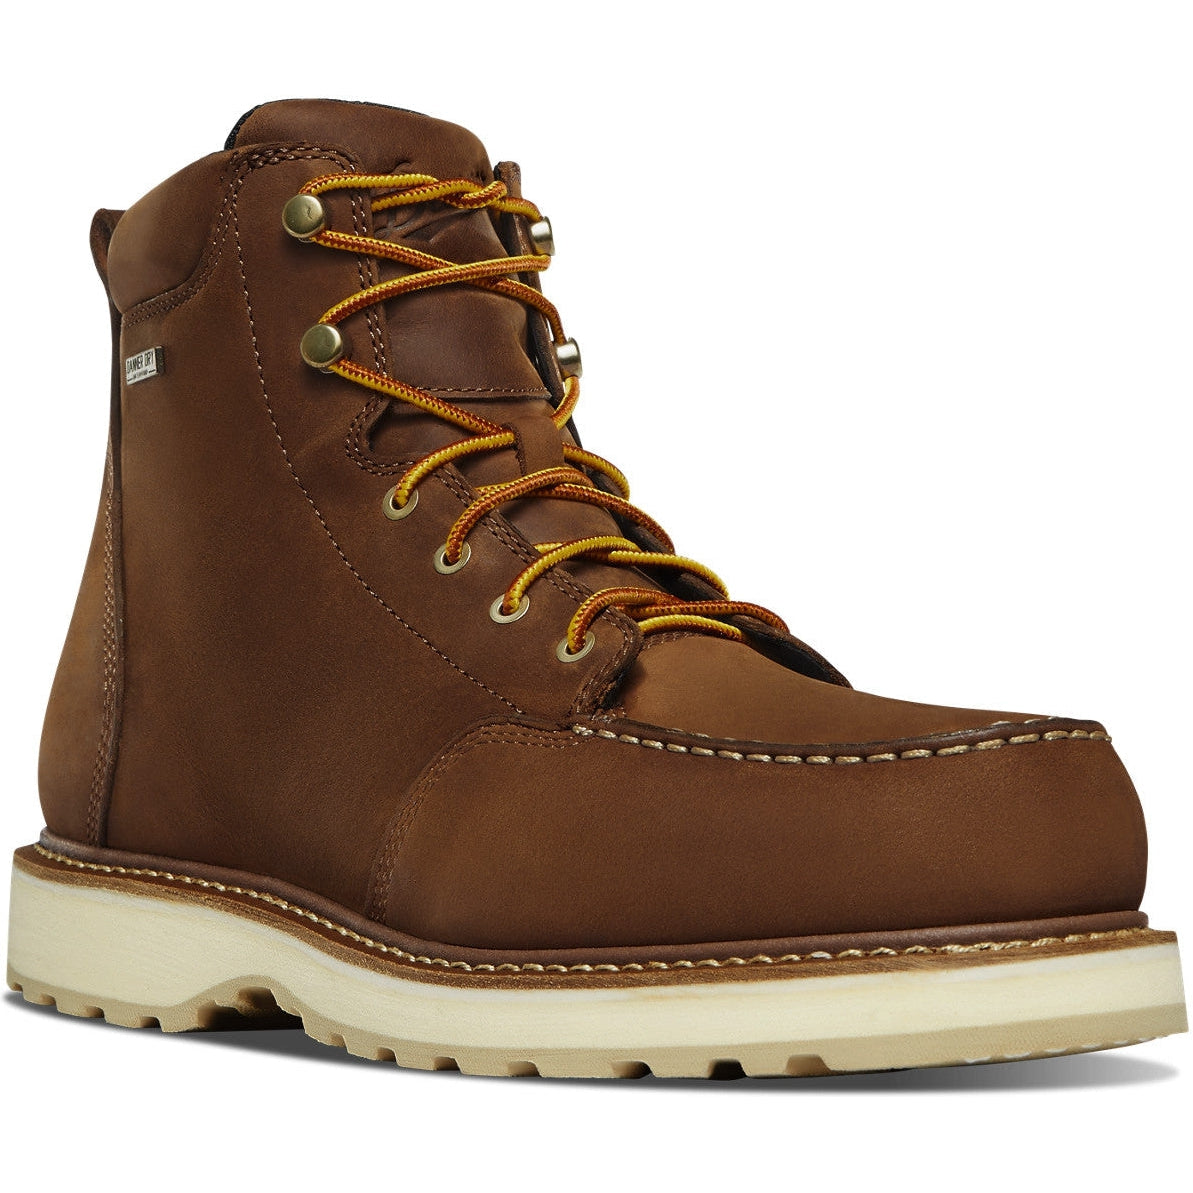 Danner Men's Cedar River 6" WP Alumi Moc Toe Work Boot - Brown - 14301 7 / Medium / Brown - Overlook Boots